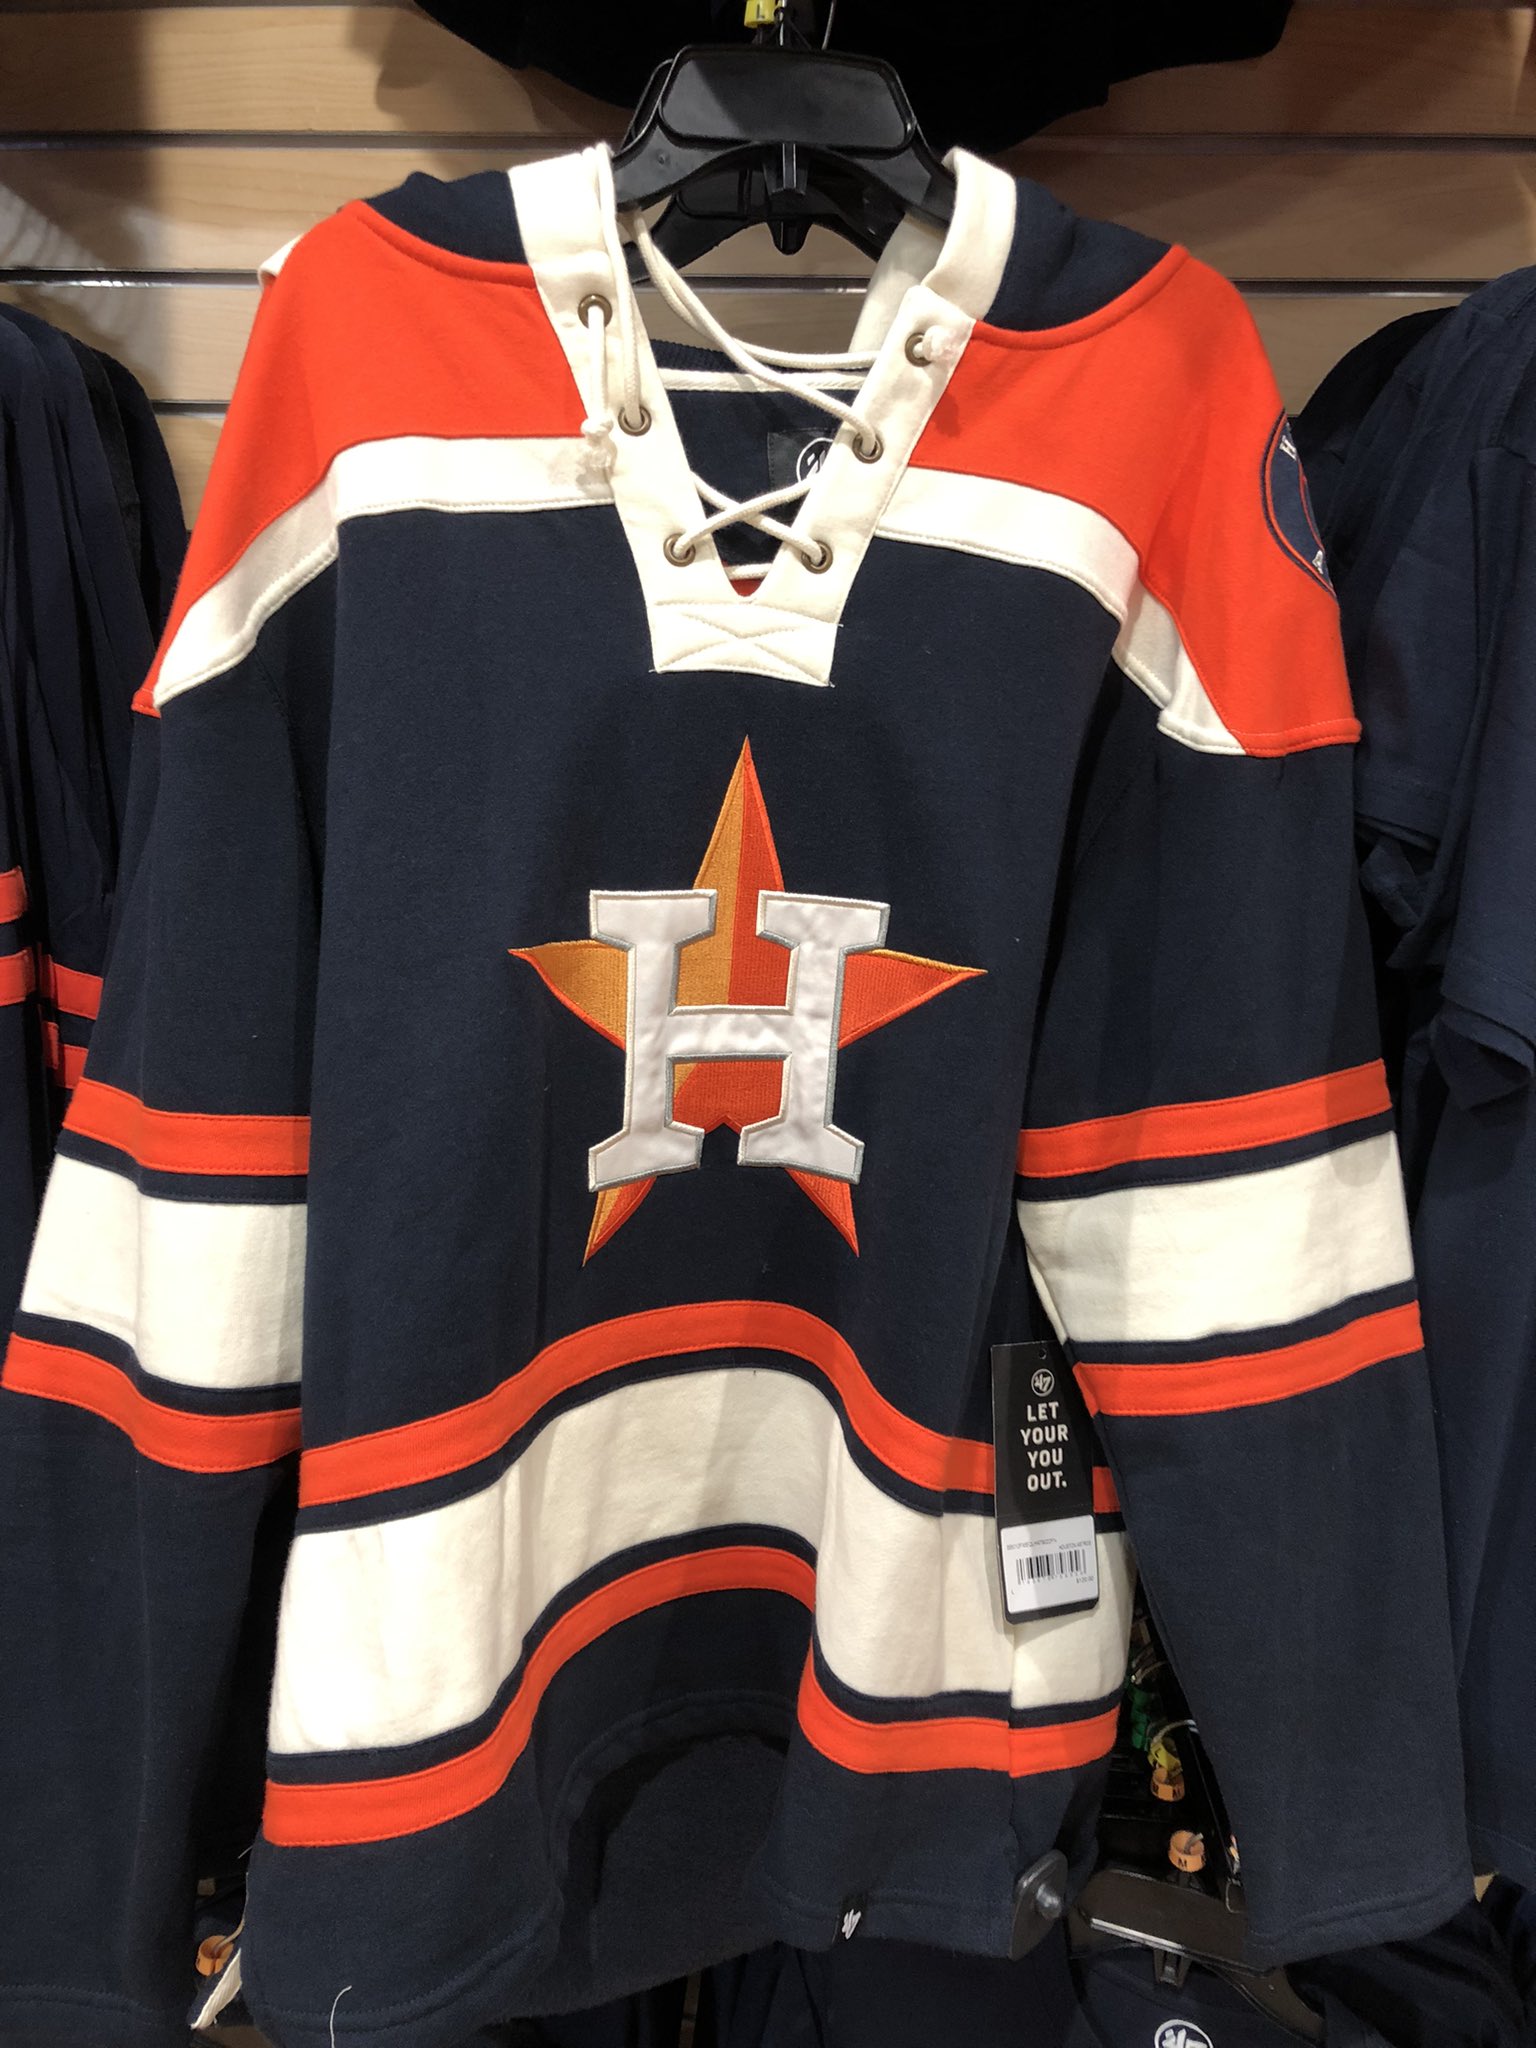 Ryan Gonzalez on X: Astros hockey jersey 🔥🔥🔥🔥